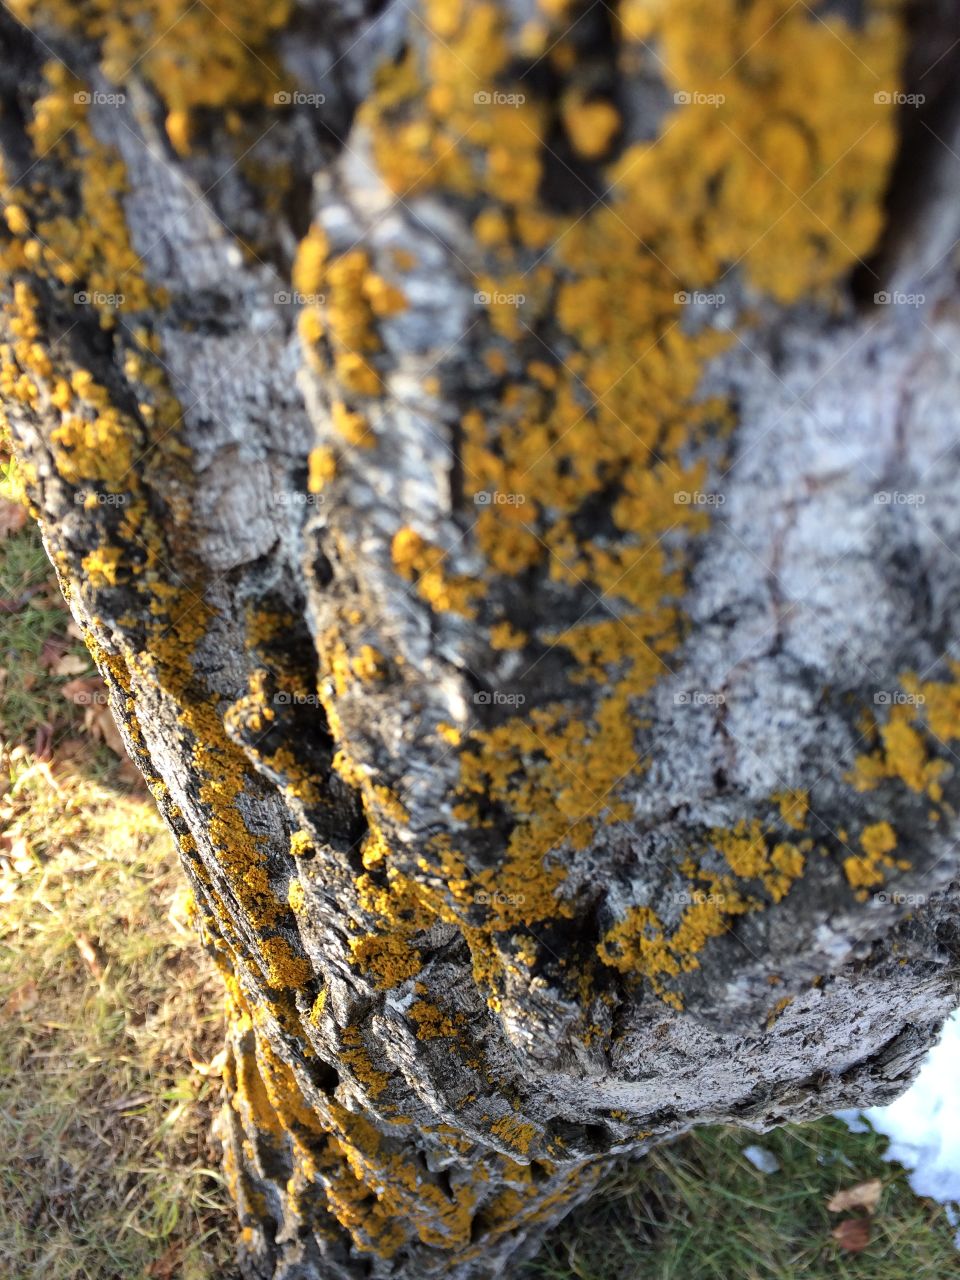 Lichen and bark